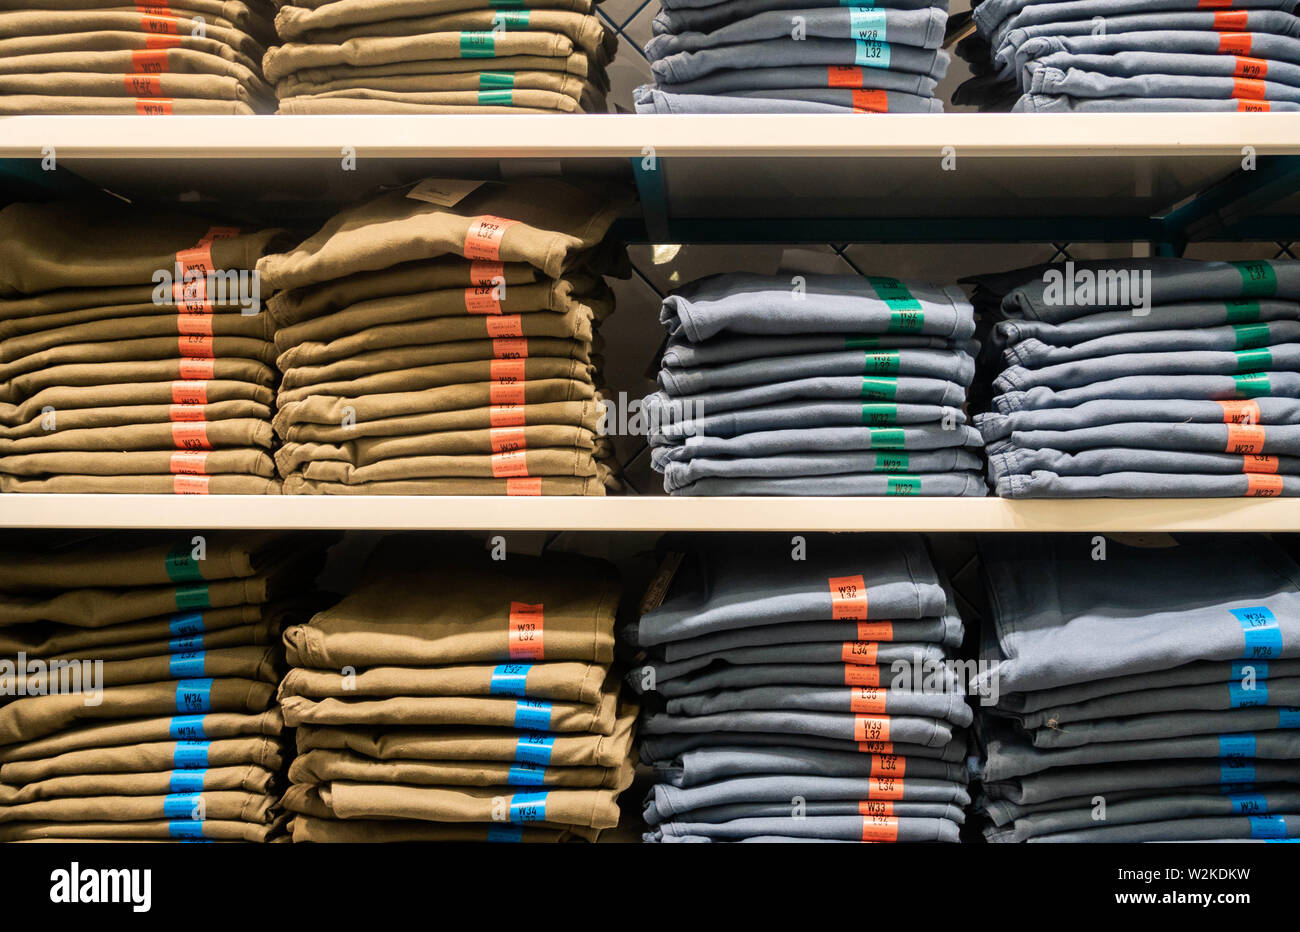 Denim jeans in Primark store. England. UK Stock Photo